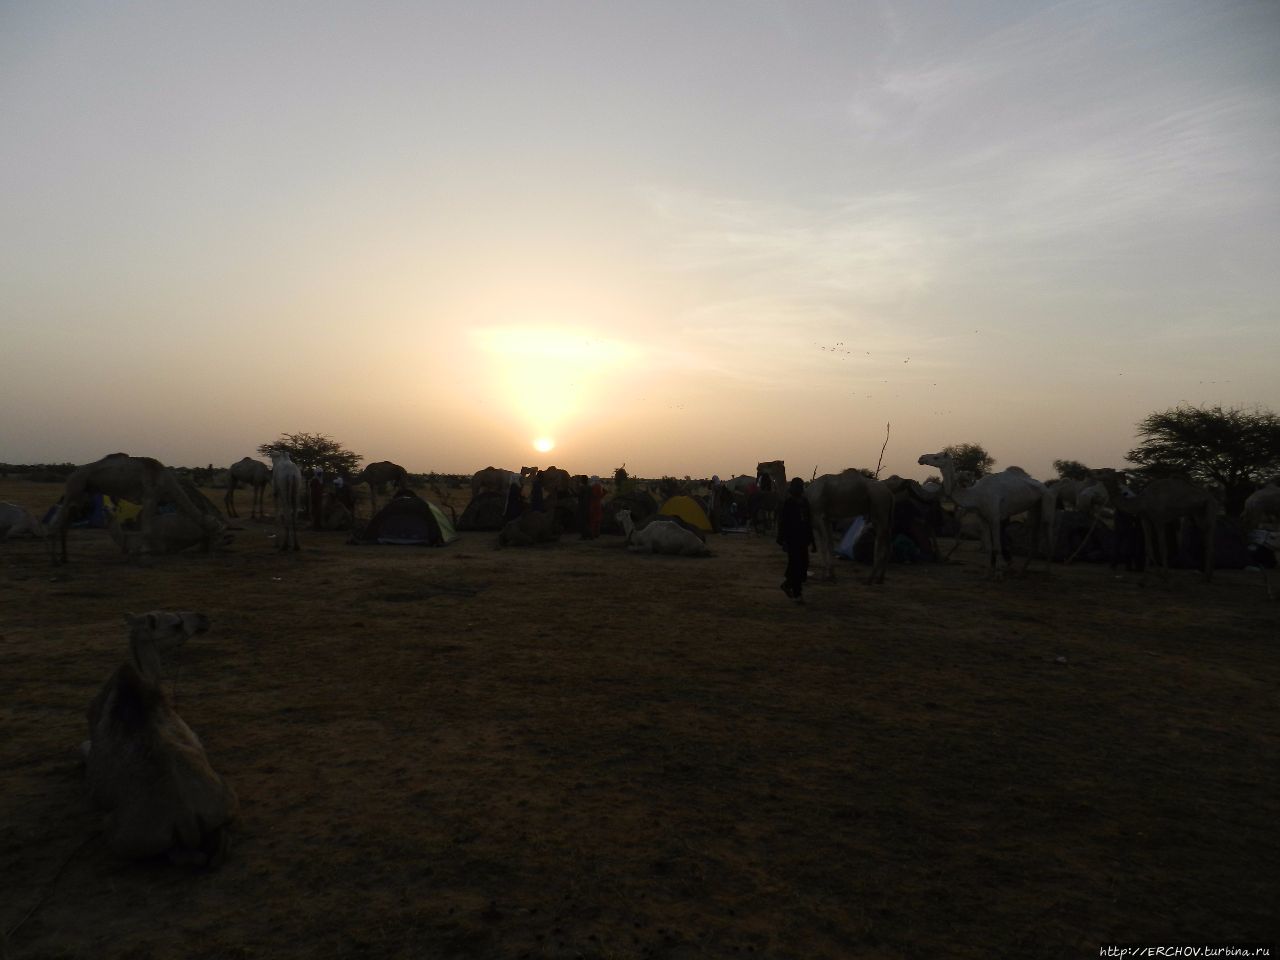 Нигер. Ч — 11. Утро в пустыне Департамент Агадес, Нигер